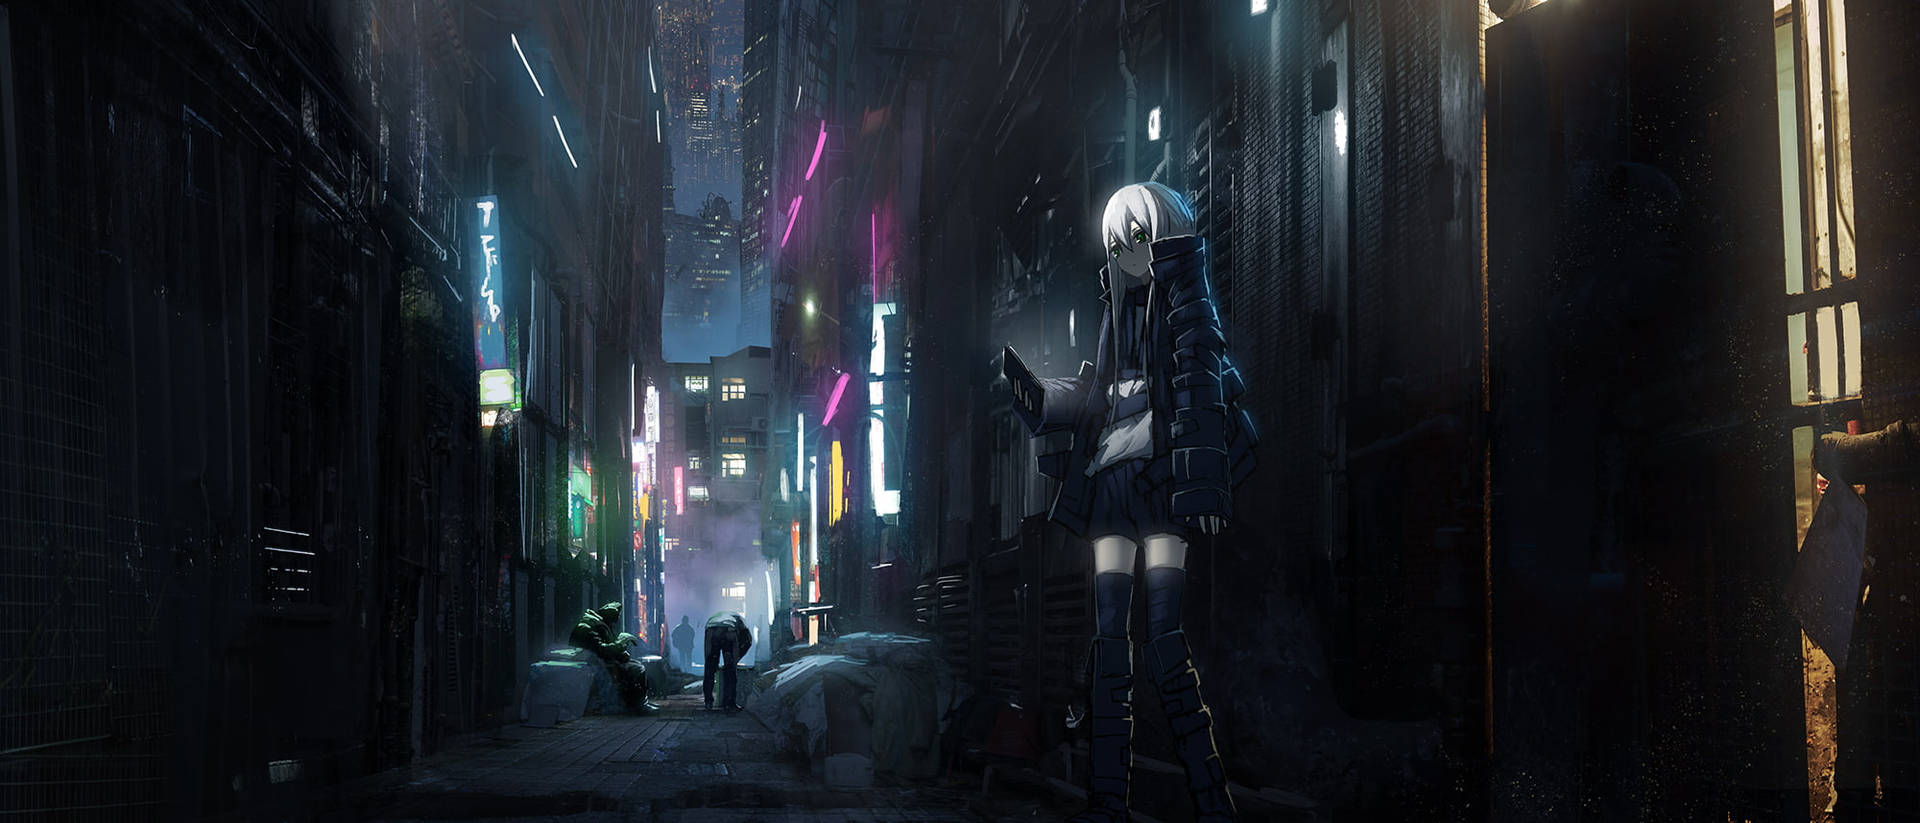 Neon City Dark Anime Aesthetic Desktop